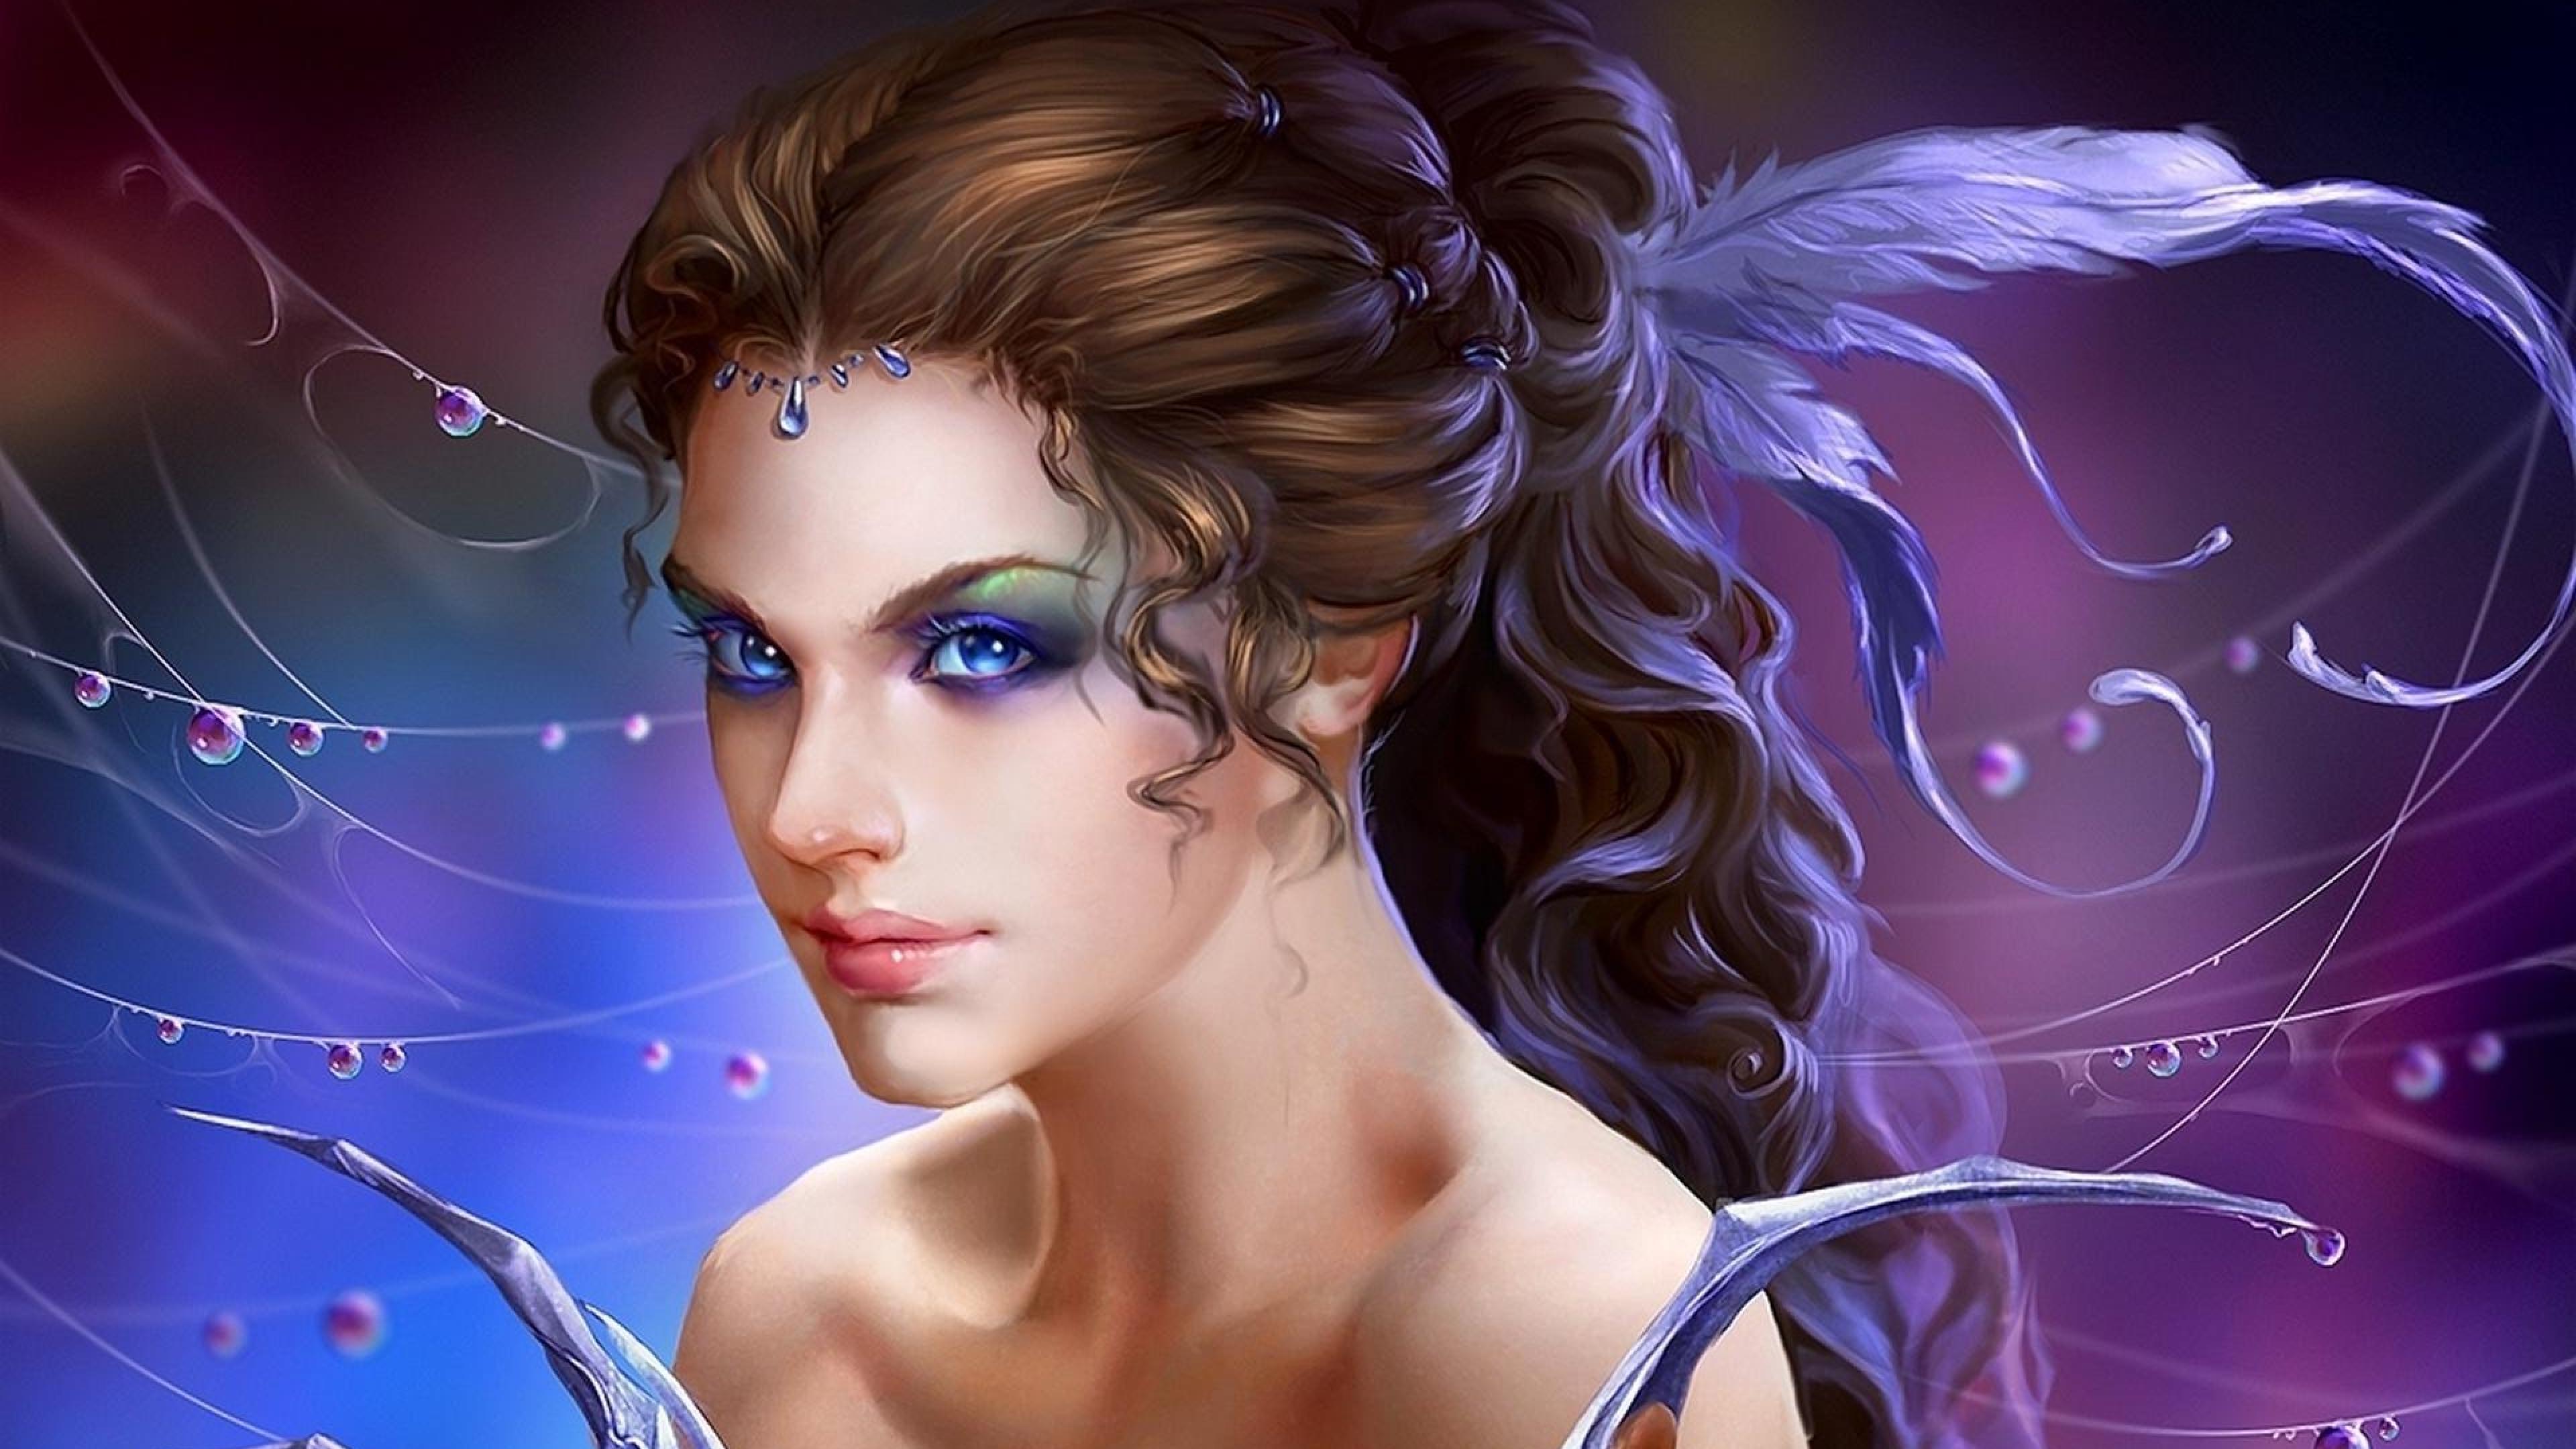 Pretty fairy Fantasy Woman Fairy HD Wallpapers, Desktop ...